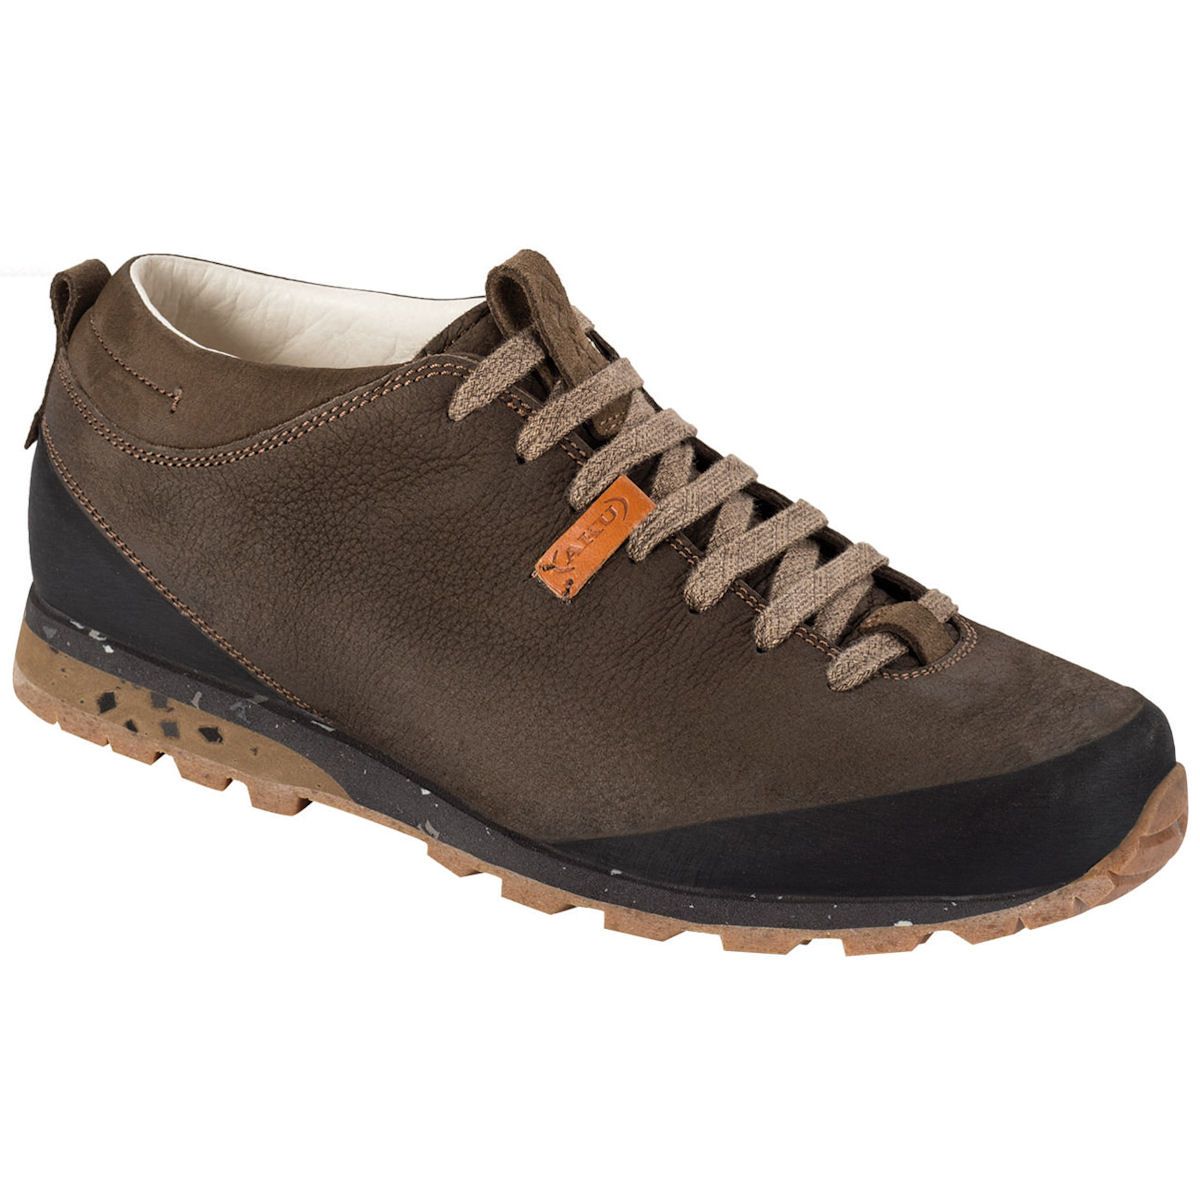 AKU Bellamont Plus Herren Leder Schuhe braun | eBay